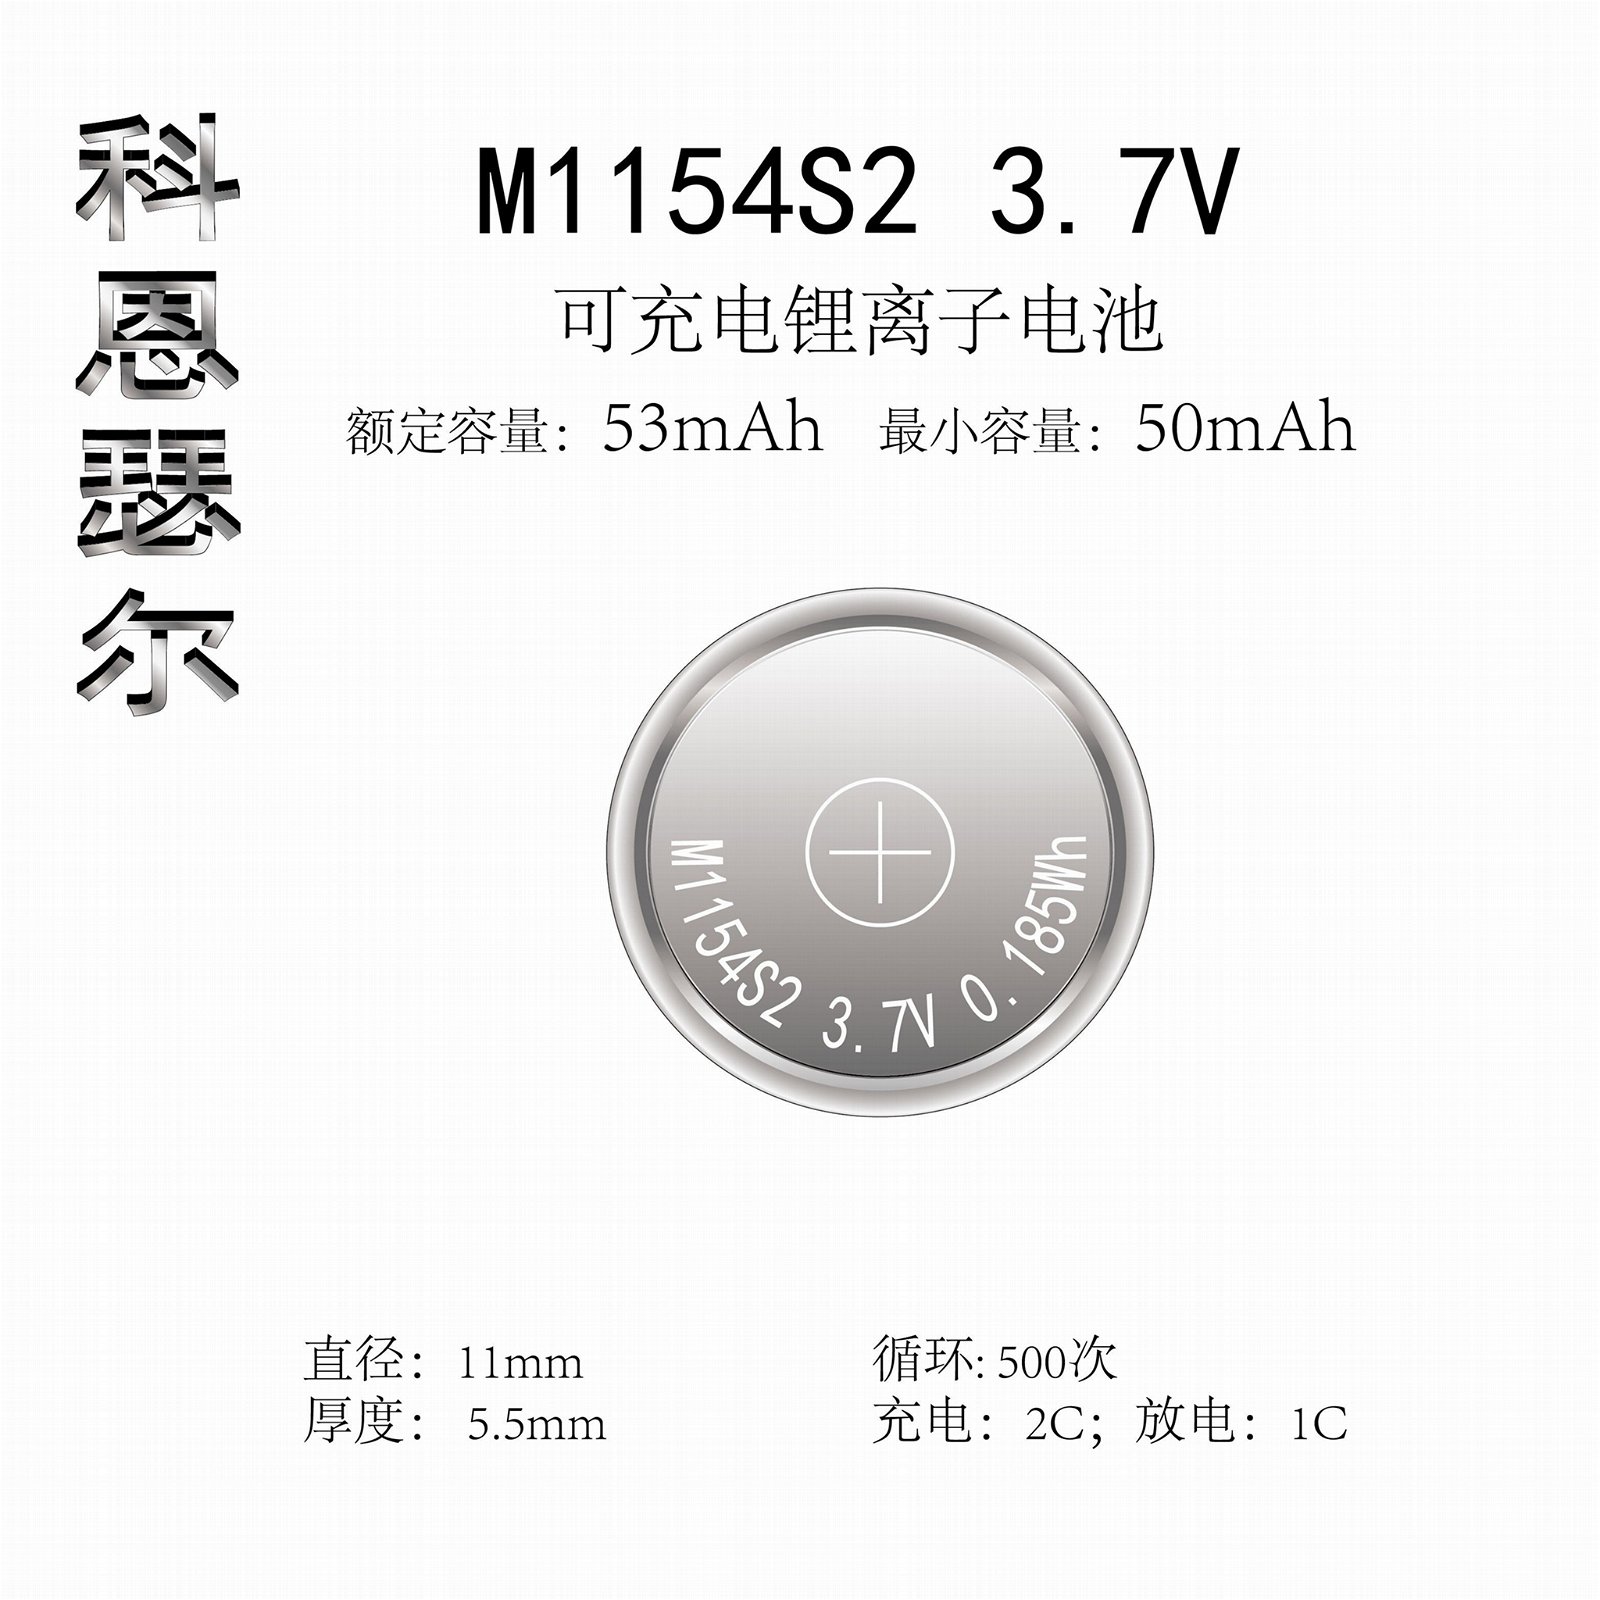 M1154 3.7V 53mAh TWS無線耳機紐扣式鋰離子電池